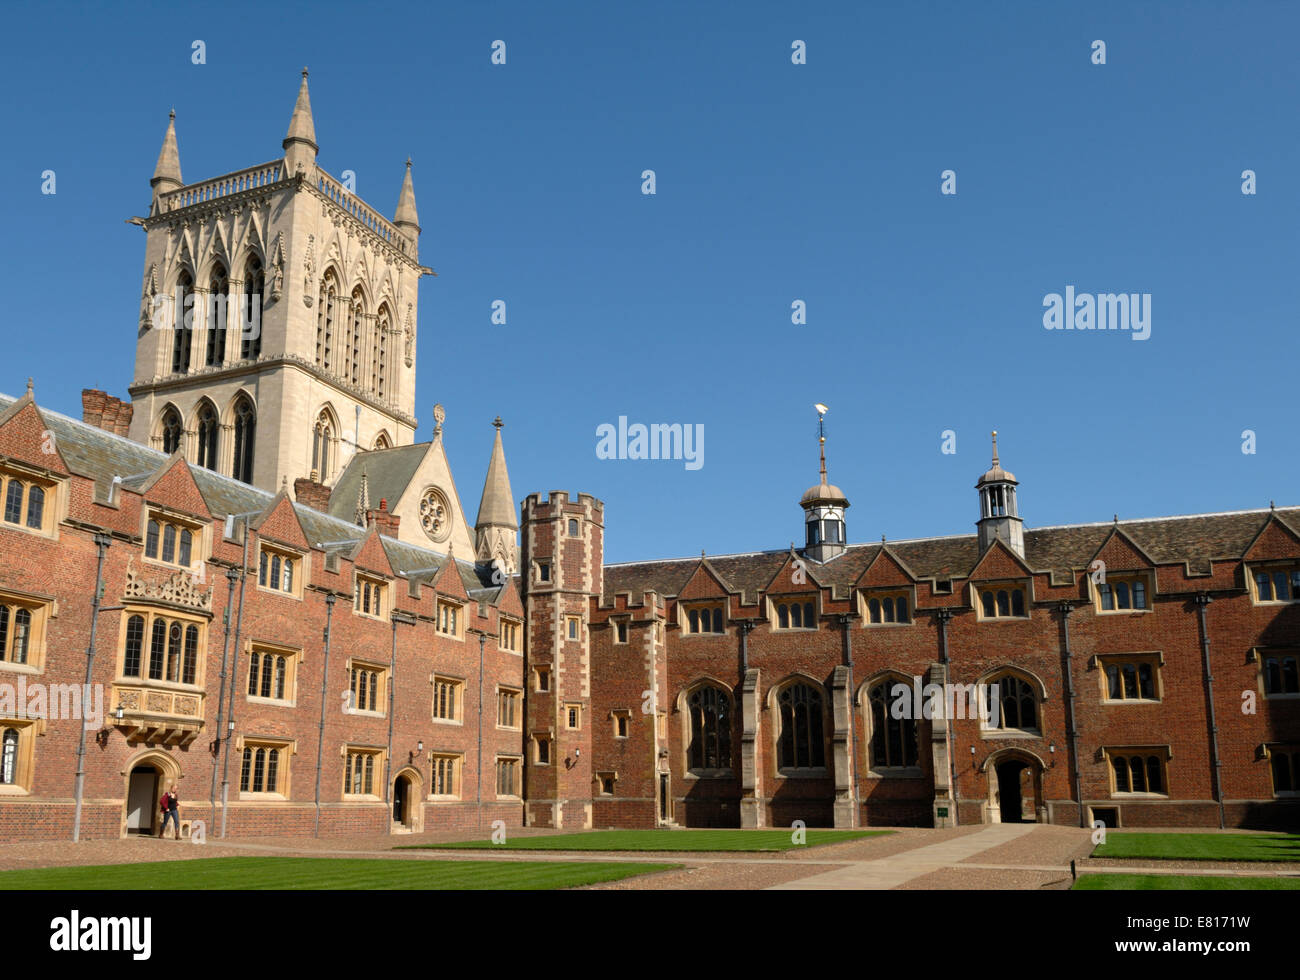 La seconde cour et Chapelle de St John's College de Cambridge, Angleterre Banque D'Images